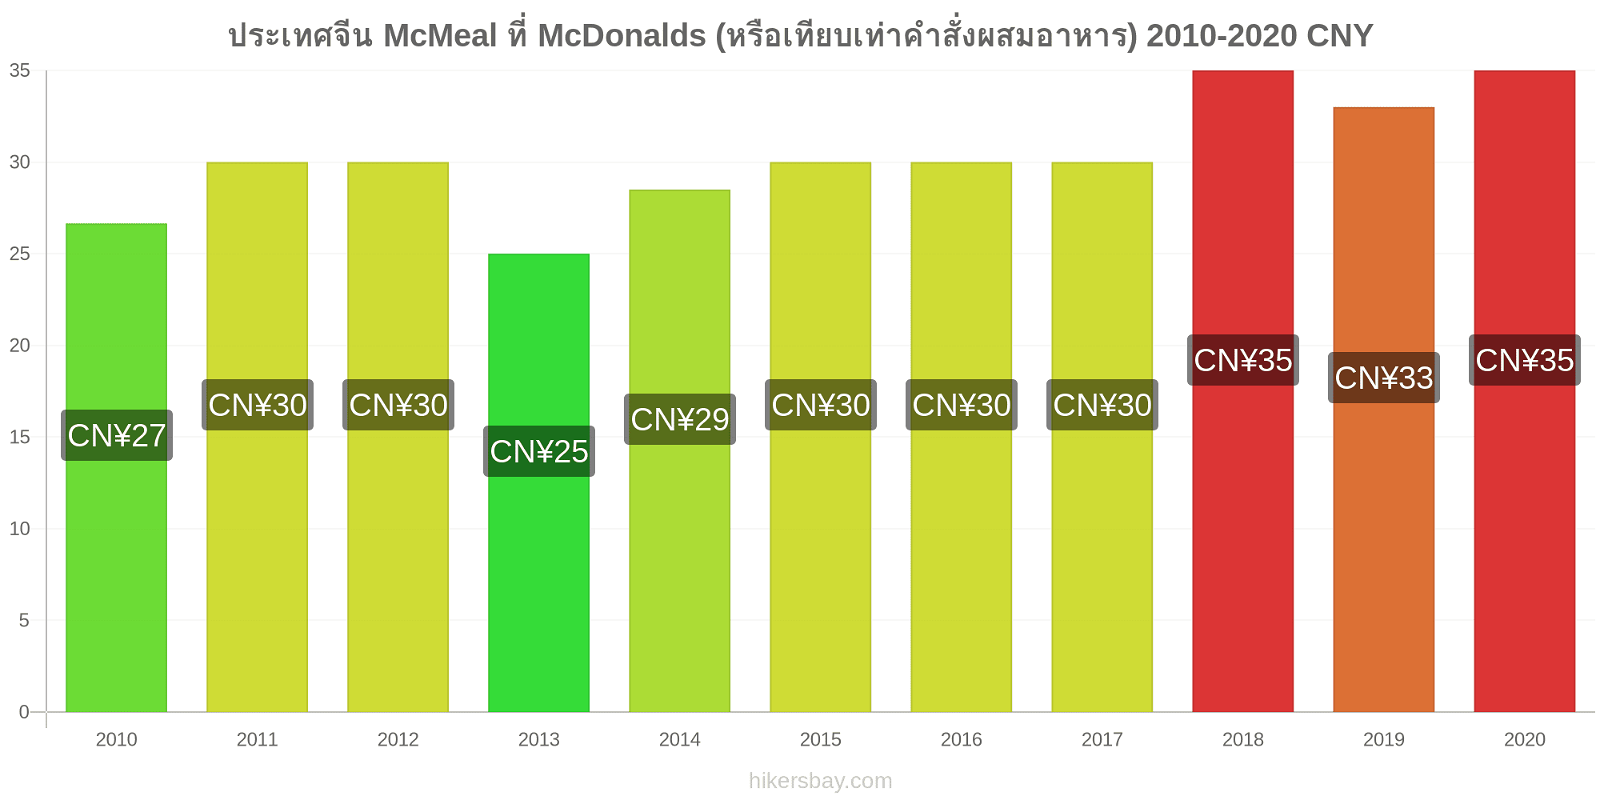 ประเทศจีน การเปลี่ยนแปลงราคา McMeal ที่ McDonalds (หรือเทียบเท่าคำสั่งผสมอาหาร) hikersbay.com